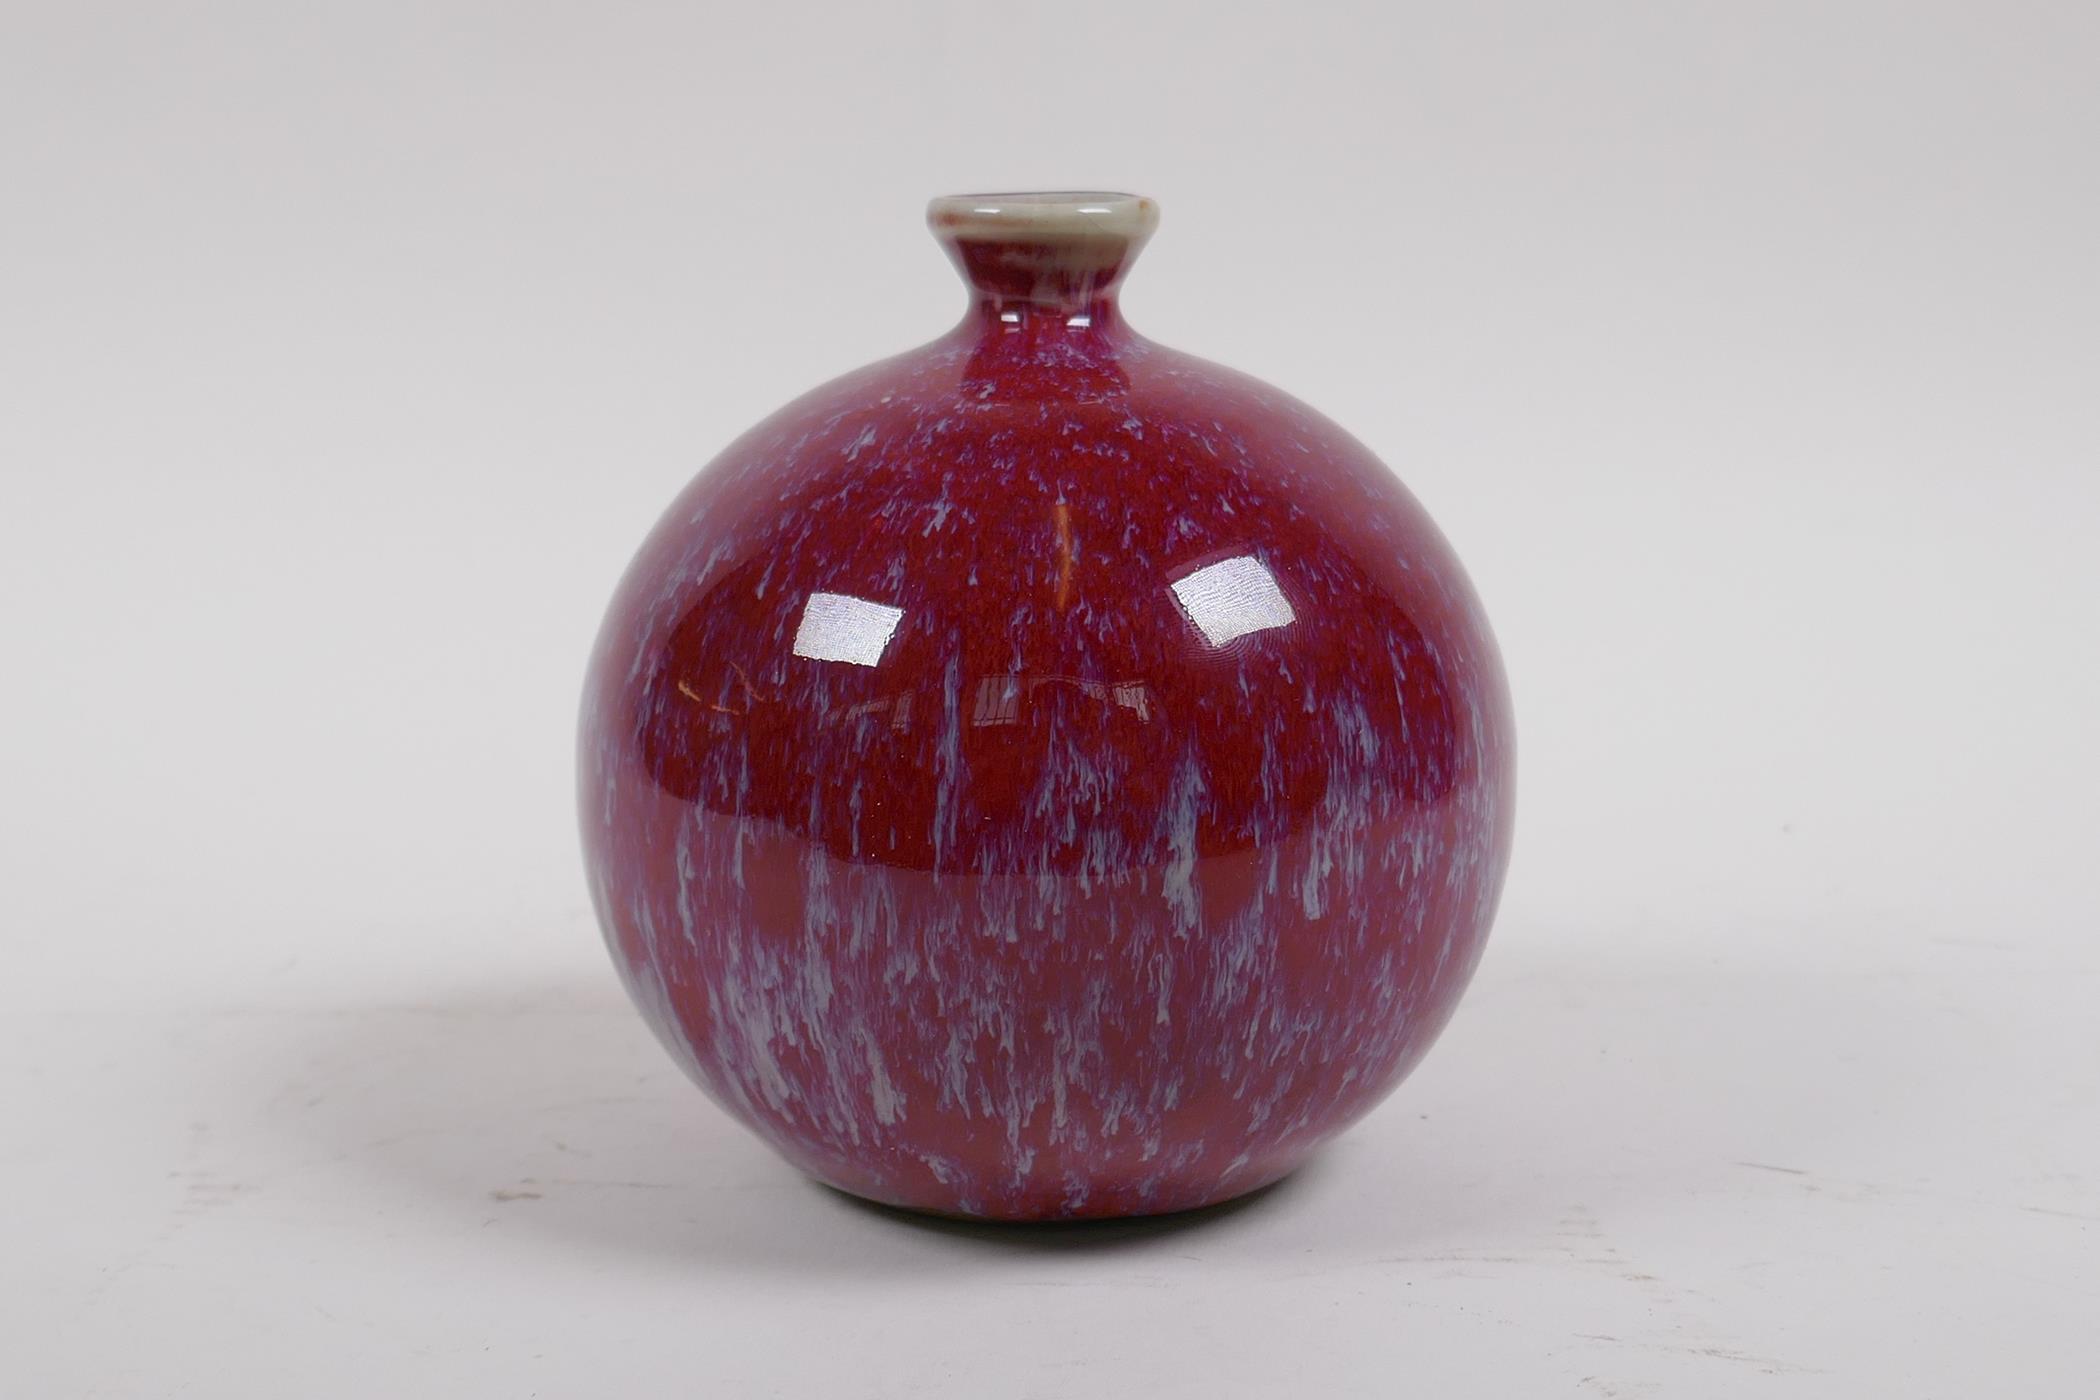 A Chinese flambe glazed porcelain pomegranate shaped bud vase, 12cm high